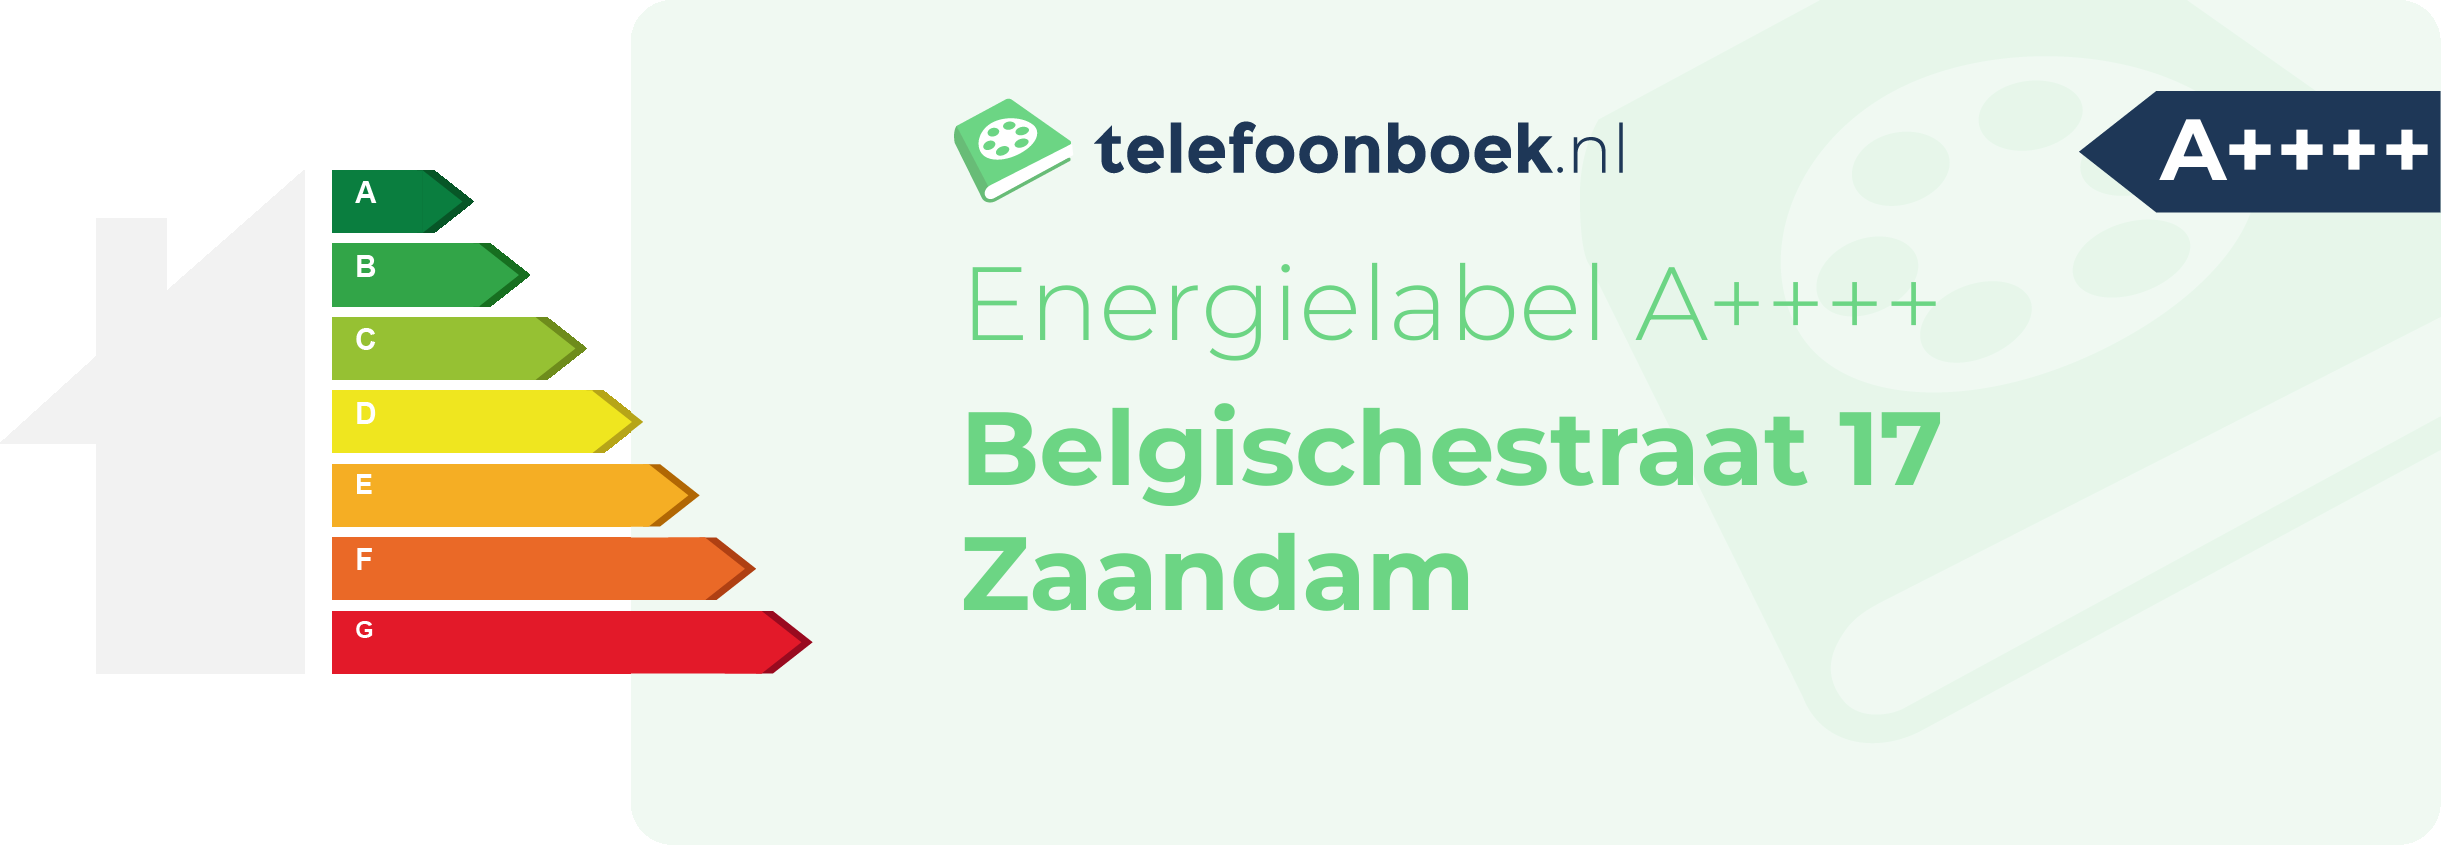 Energielabel Belgischestraat 17 Zaandam